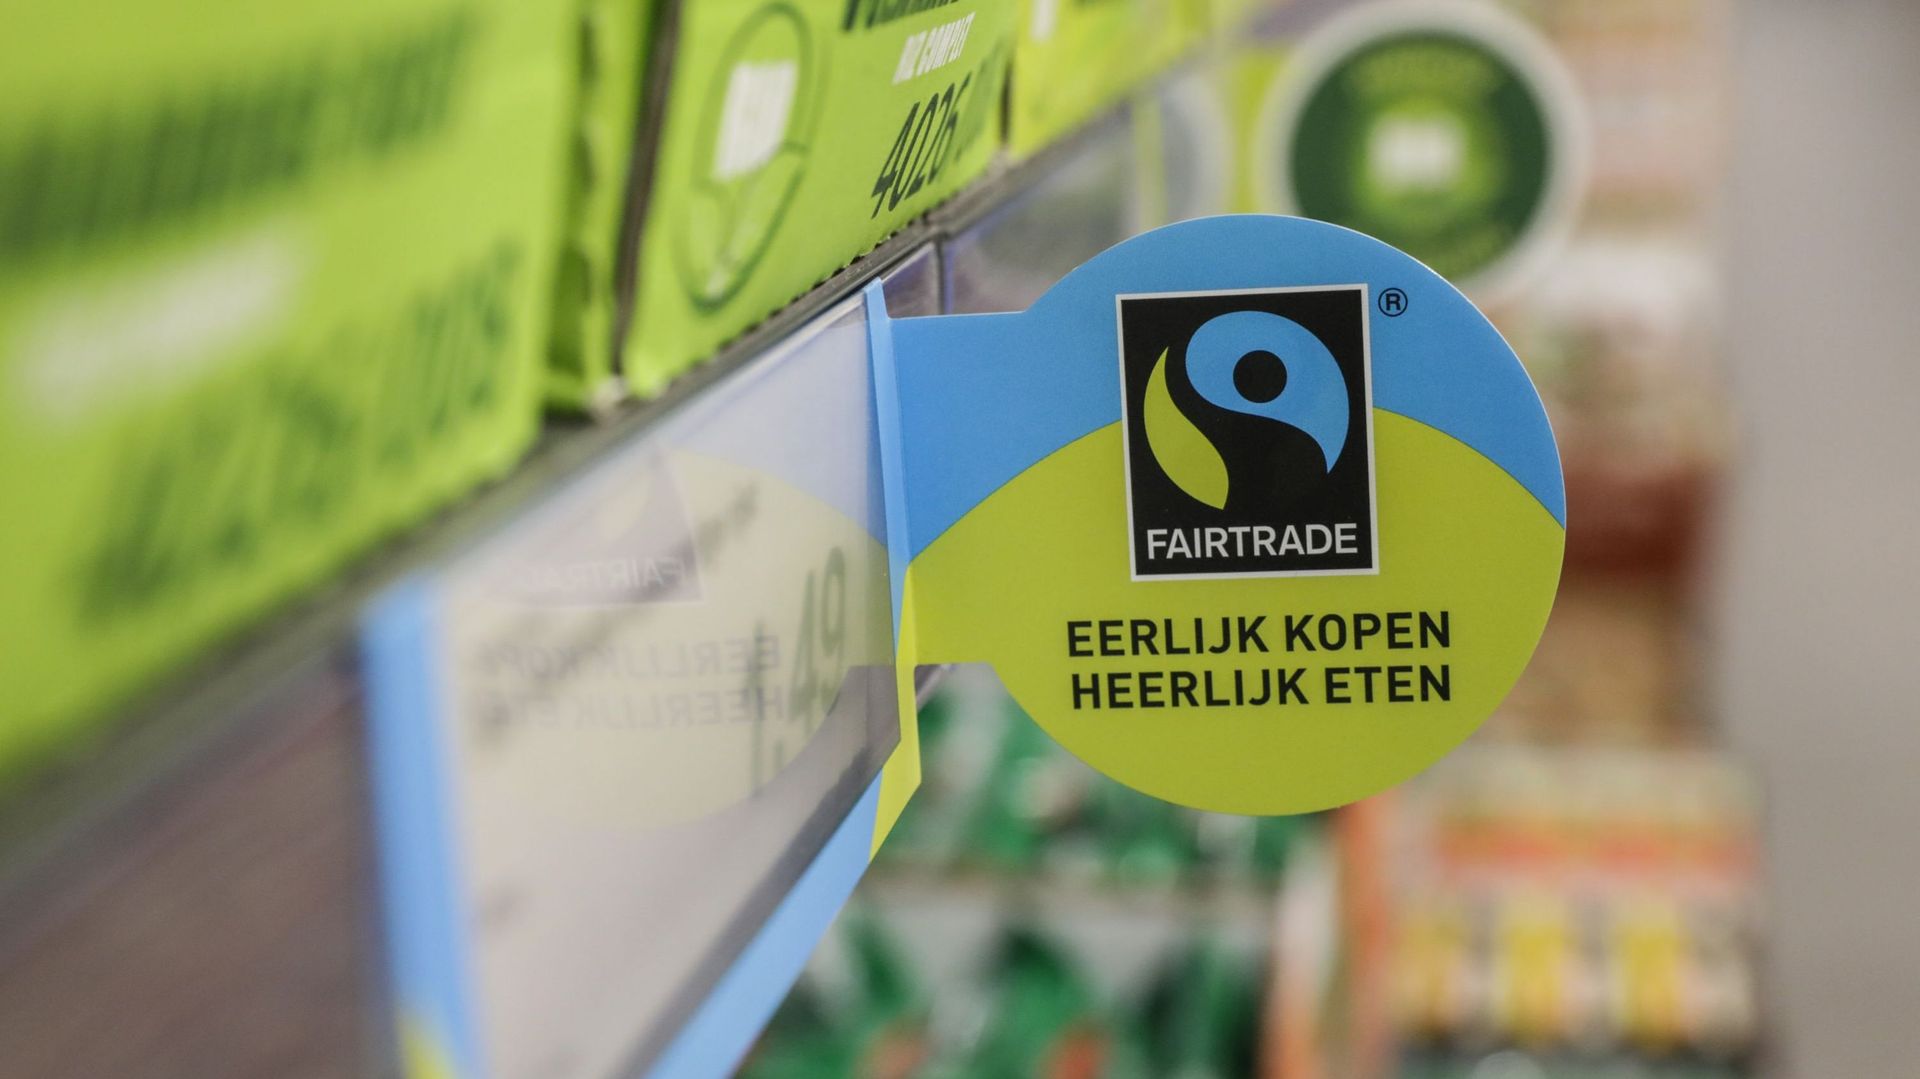 Le label Fairtrade garantit un salaire minimum aux producteurs